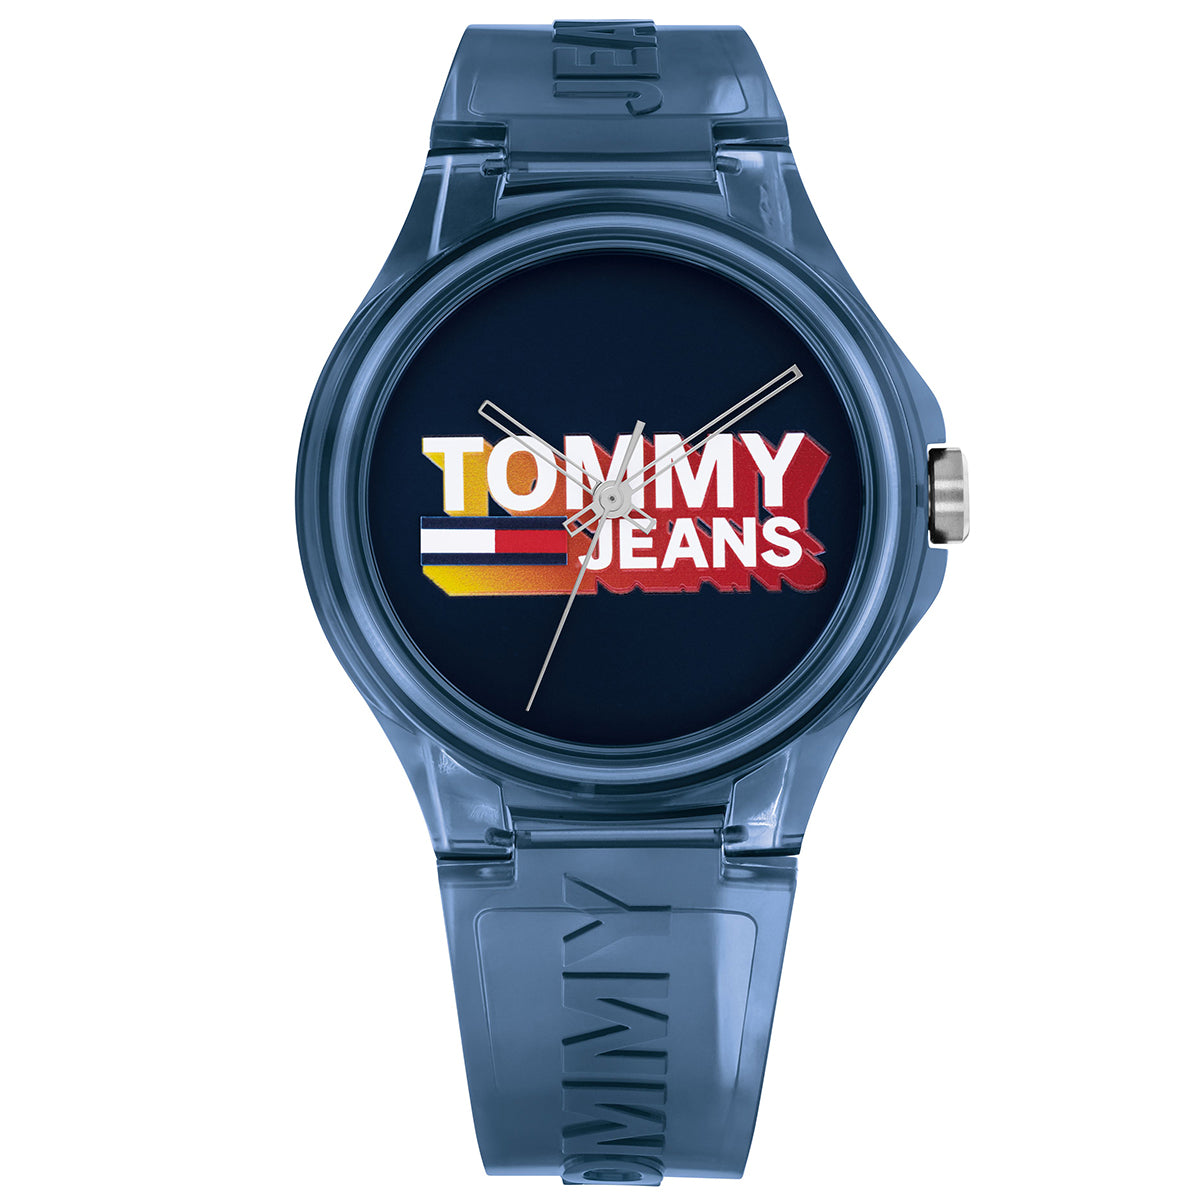 Tommy - Jeans Berlin - 172.0028